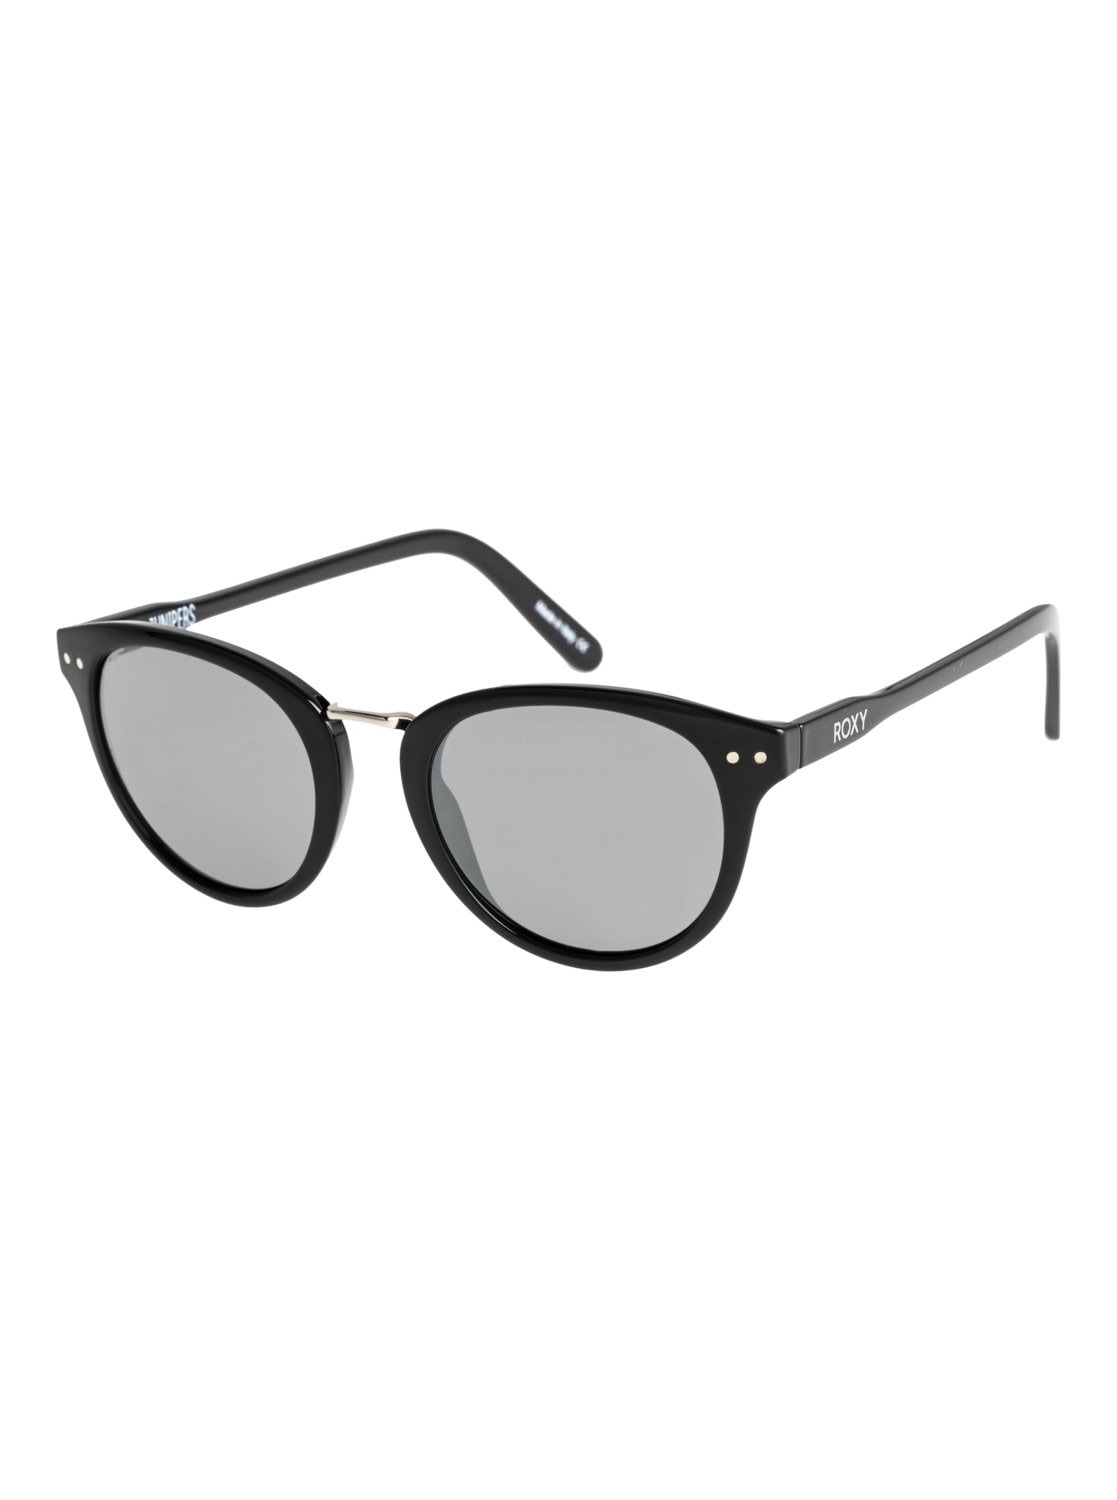 Otto Sonnenbrille online kaufen ▻